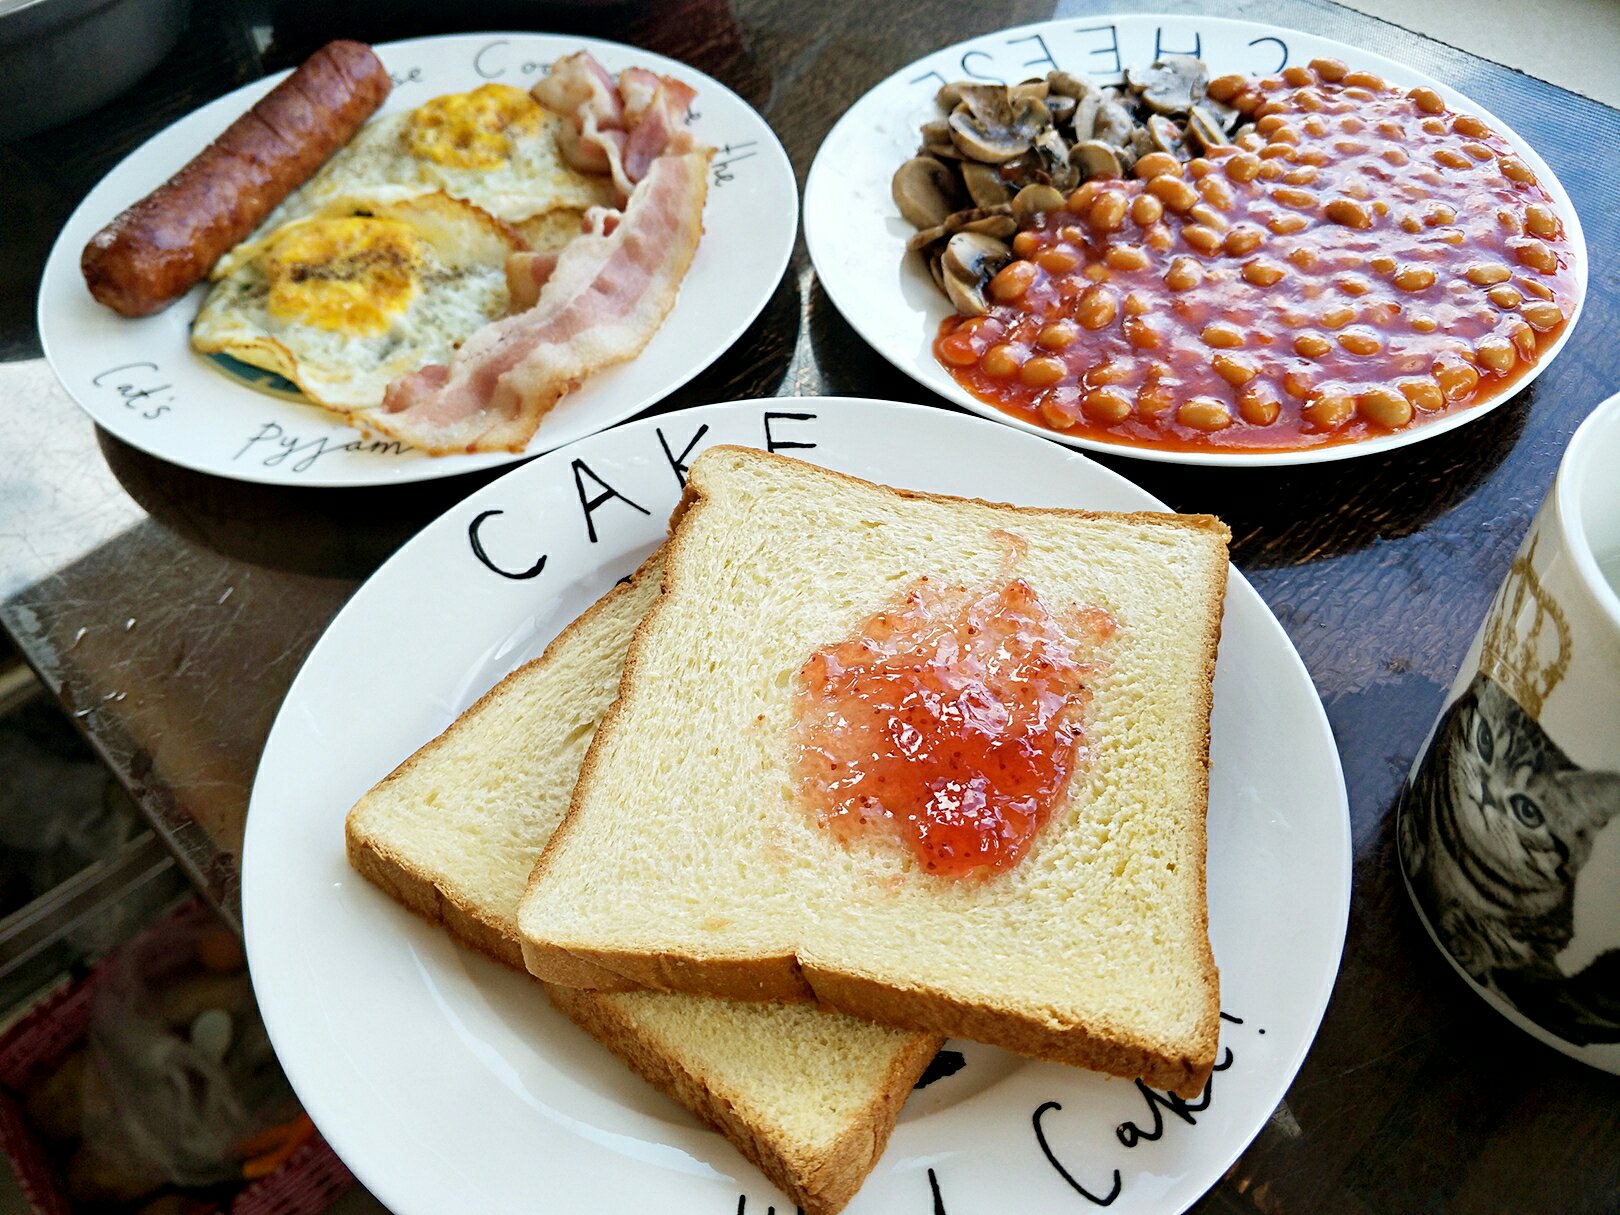 英式早餐 Full English Breakfast